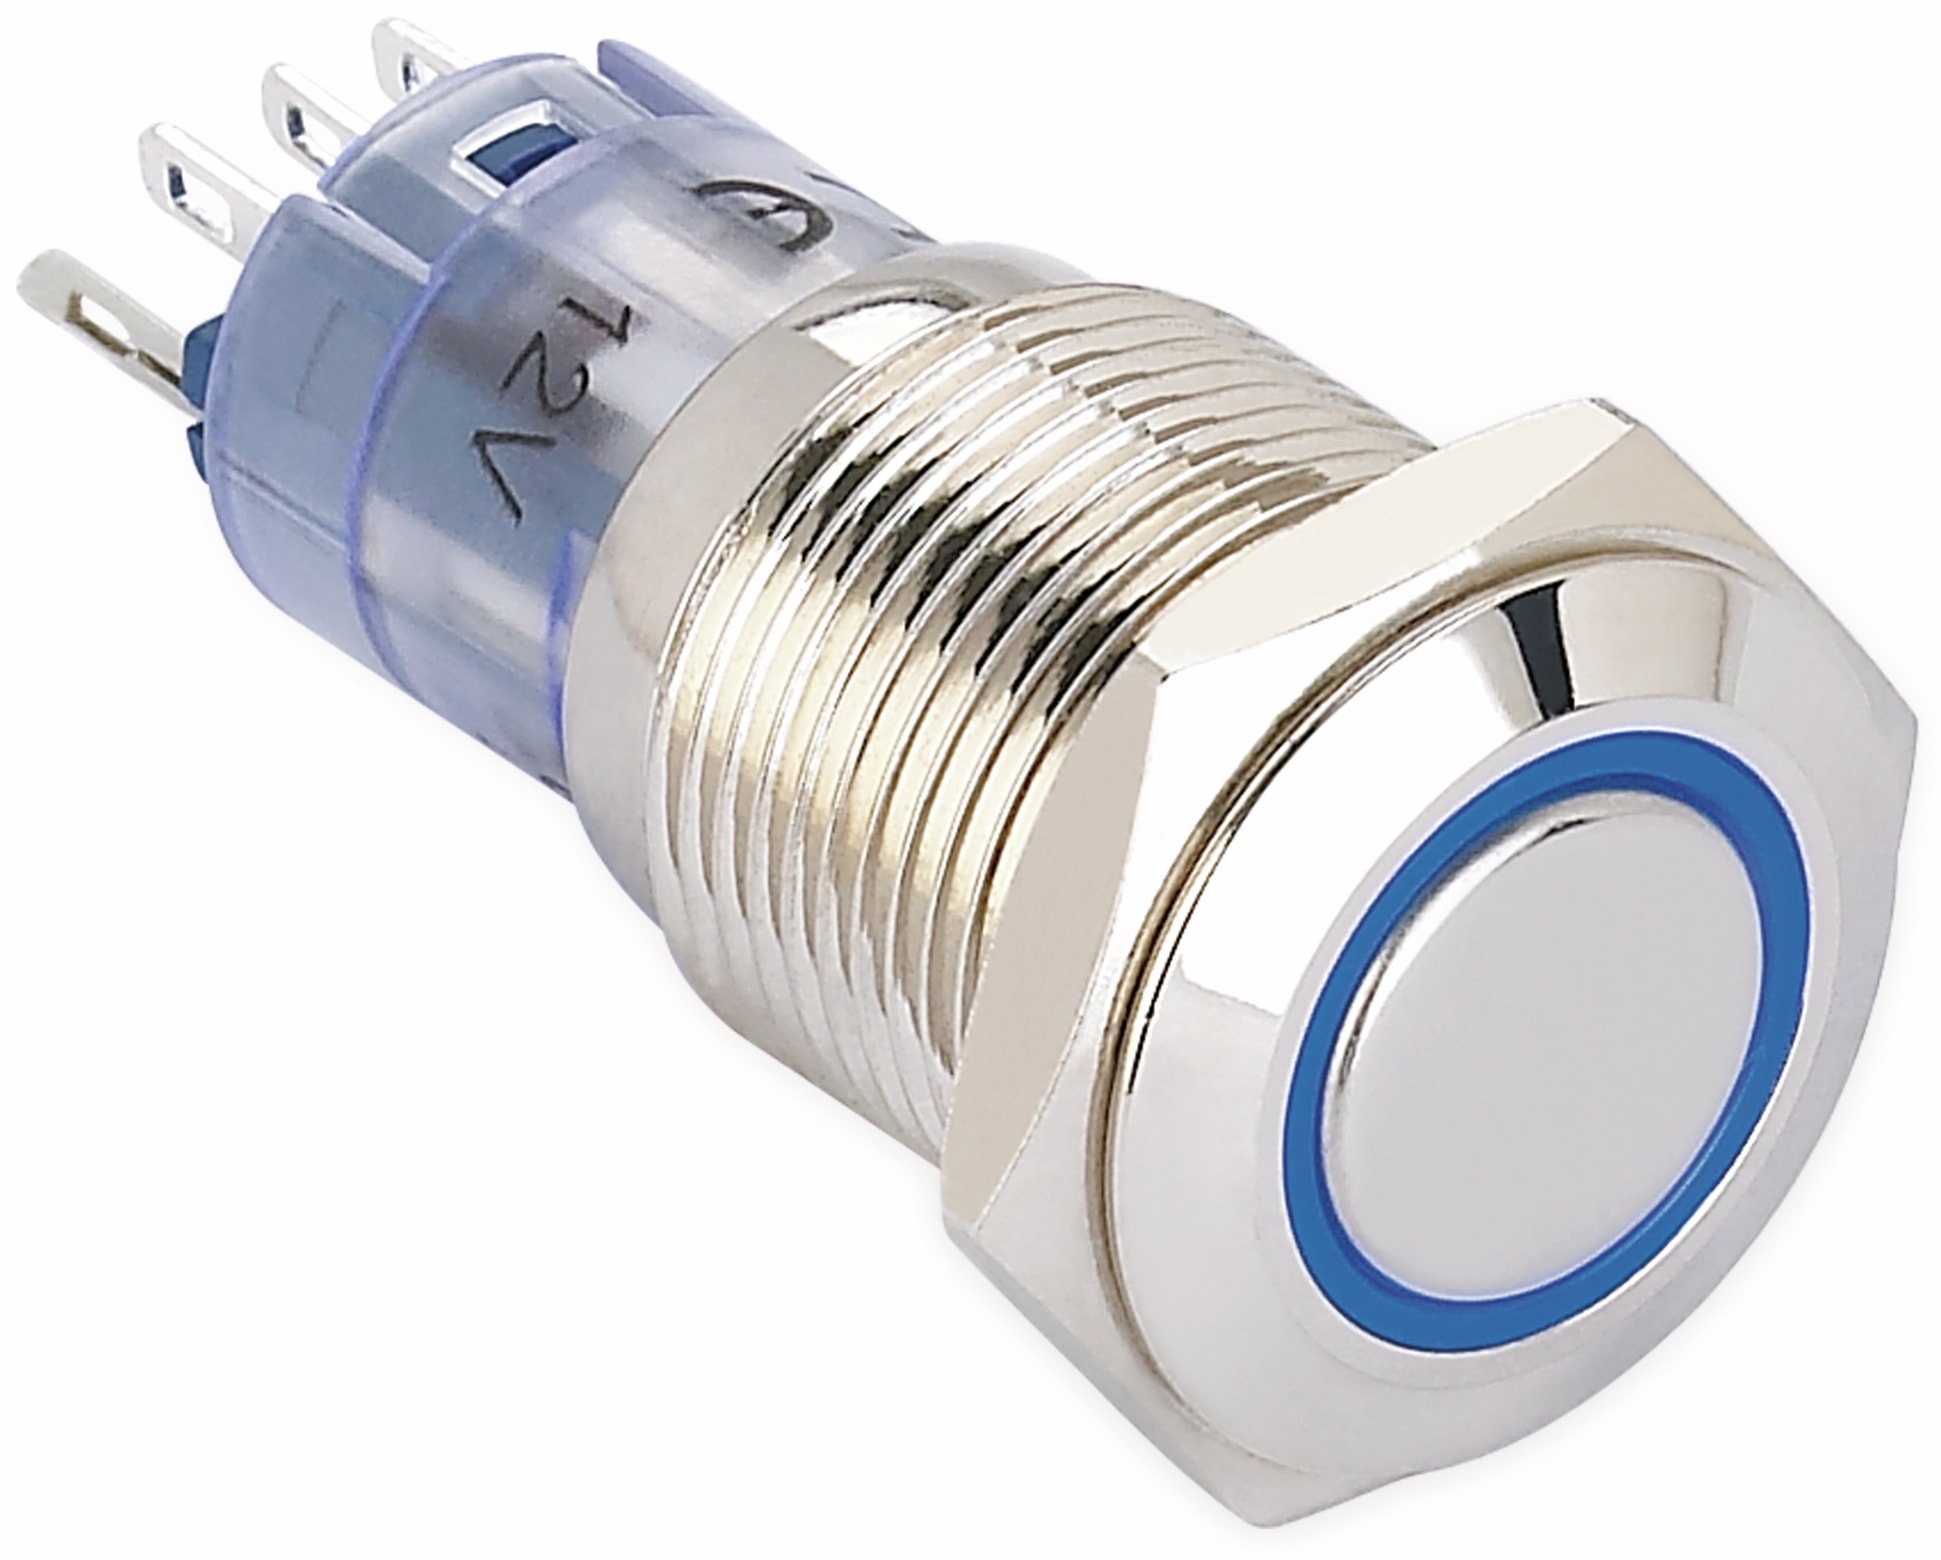 ONPOW Schalter, 24 V/DC, 1x Off/On, Beleuchtung blau, Lötanschluss, flach rund, Messing, 16 mm